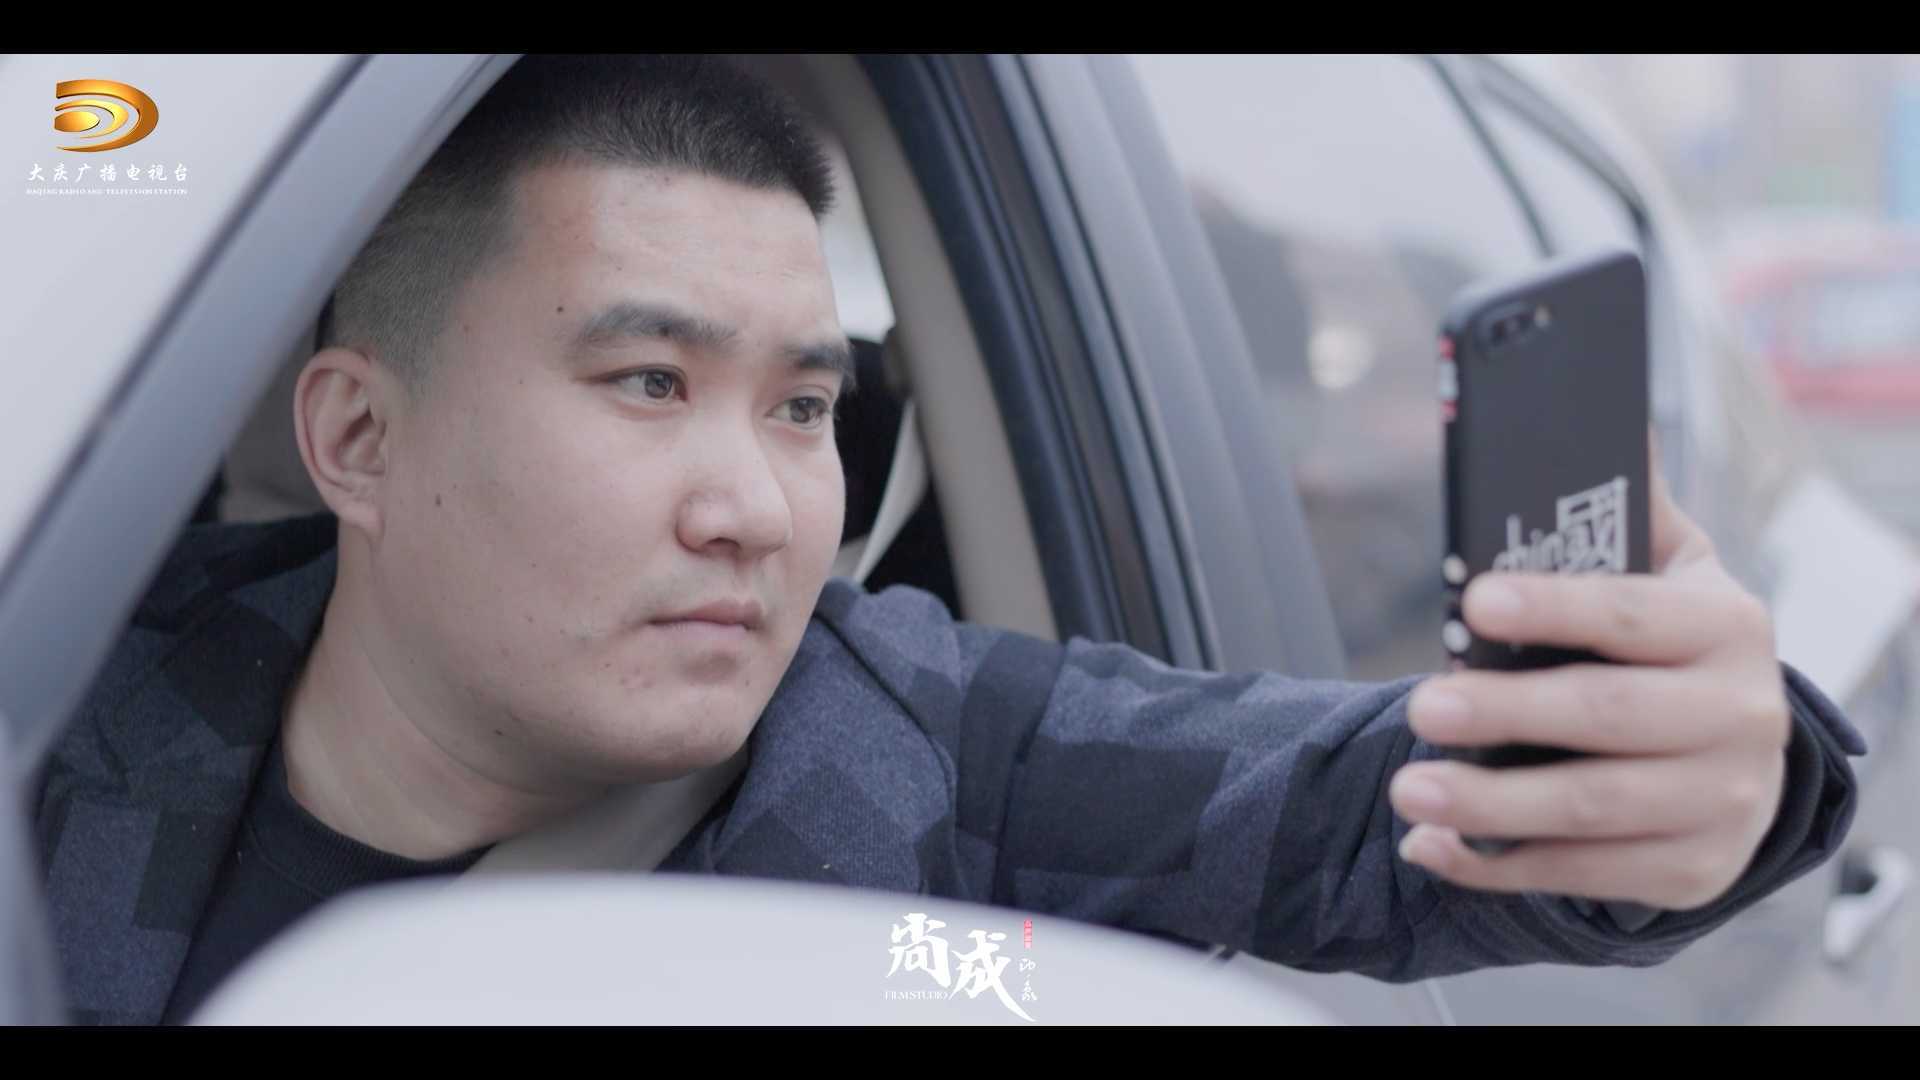 『尚成印象』智慧泊车宣传片